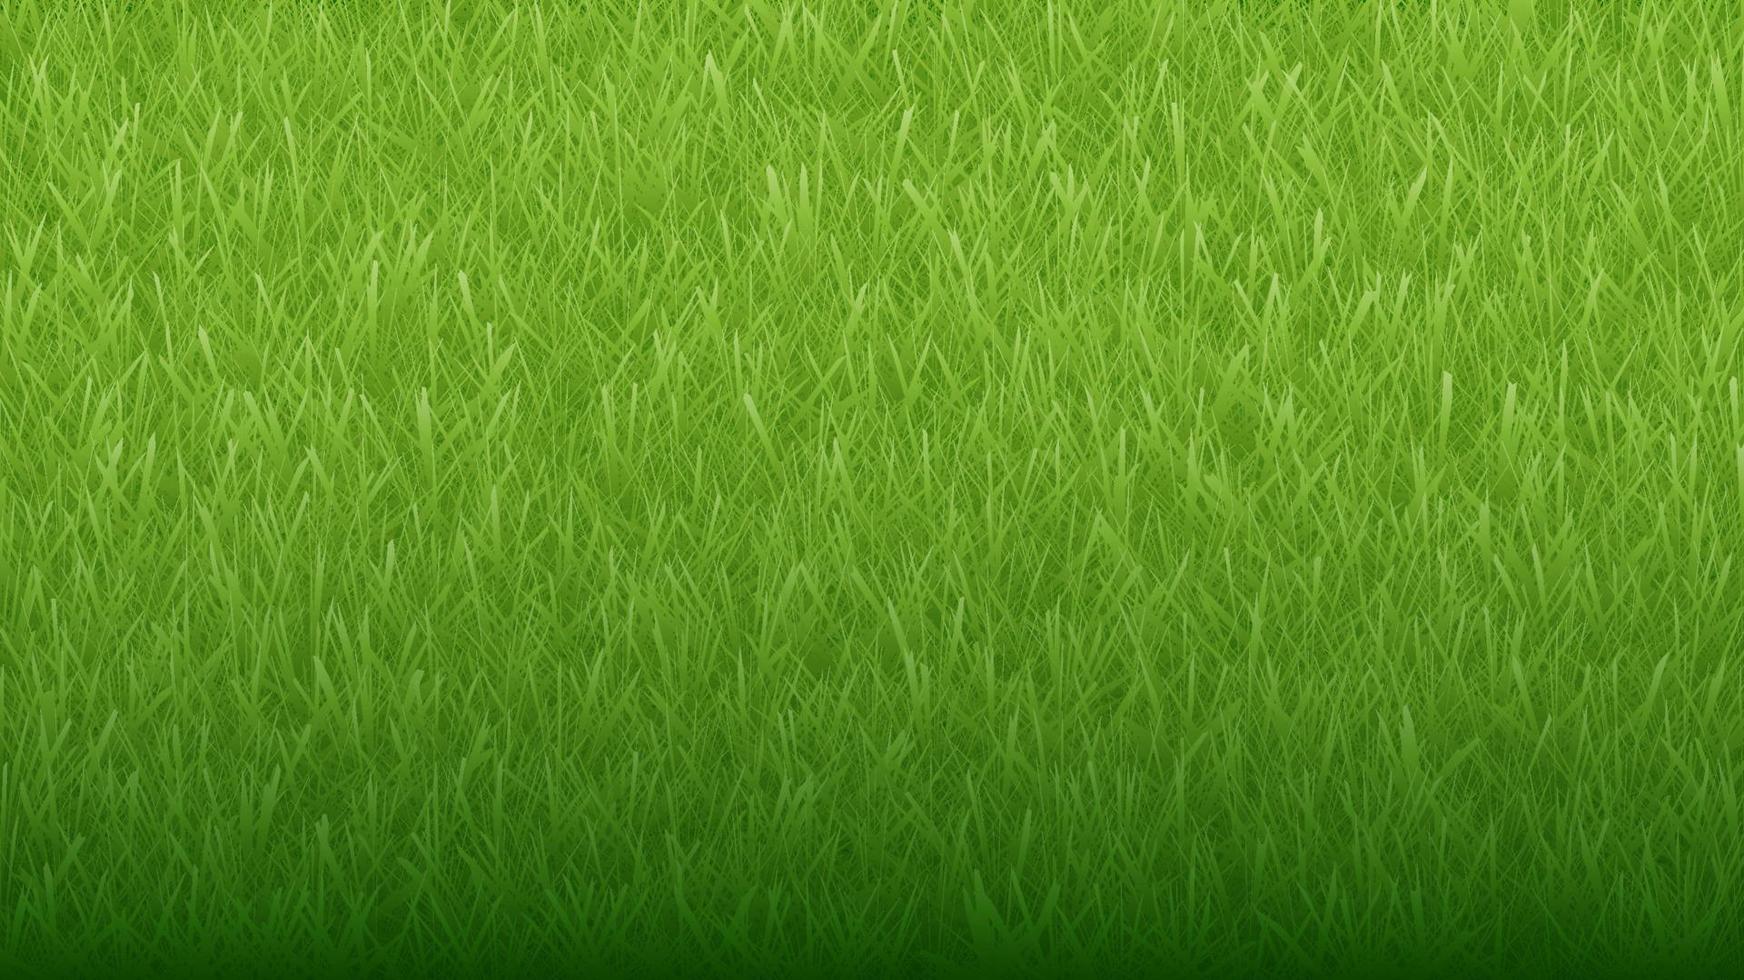 fundo e textura de grama orgânica natural verde vetor